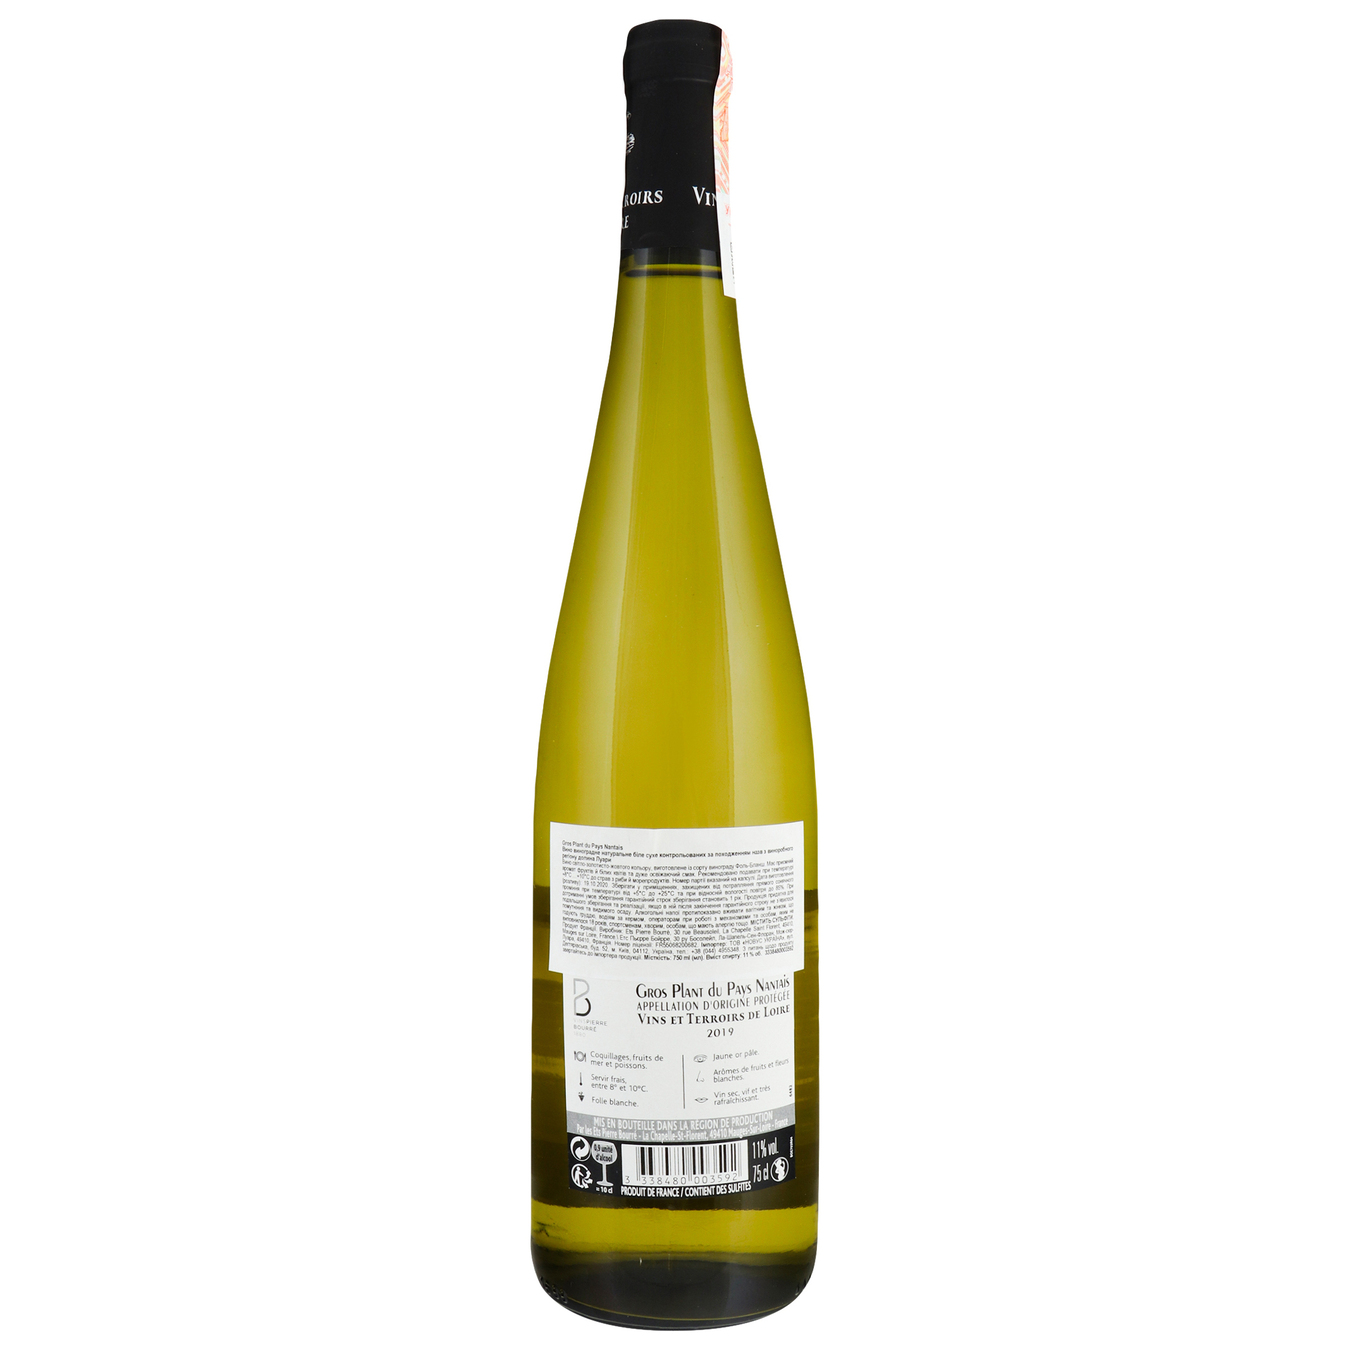 Вино Vins et Terroirs de Loire Gros Plant du Pays Nantais біле сухе 11%0,75л 2